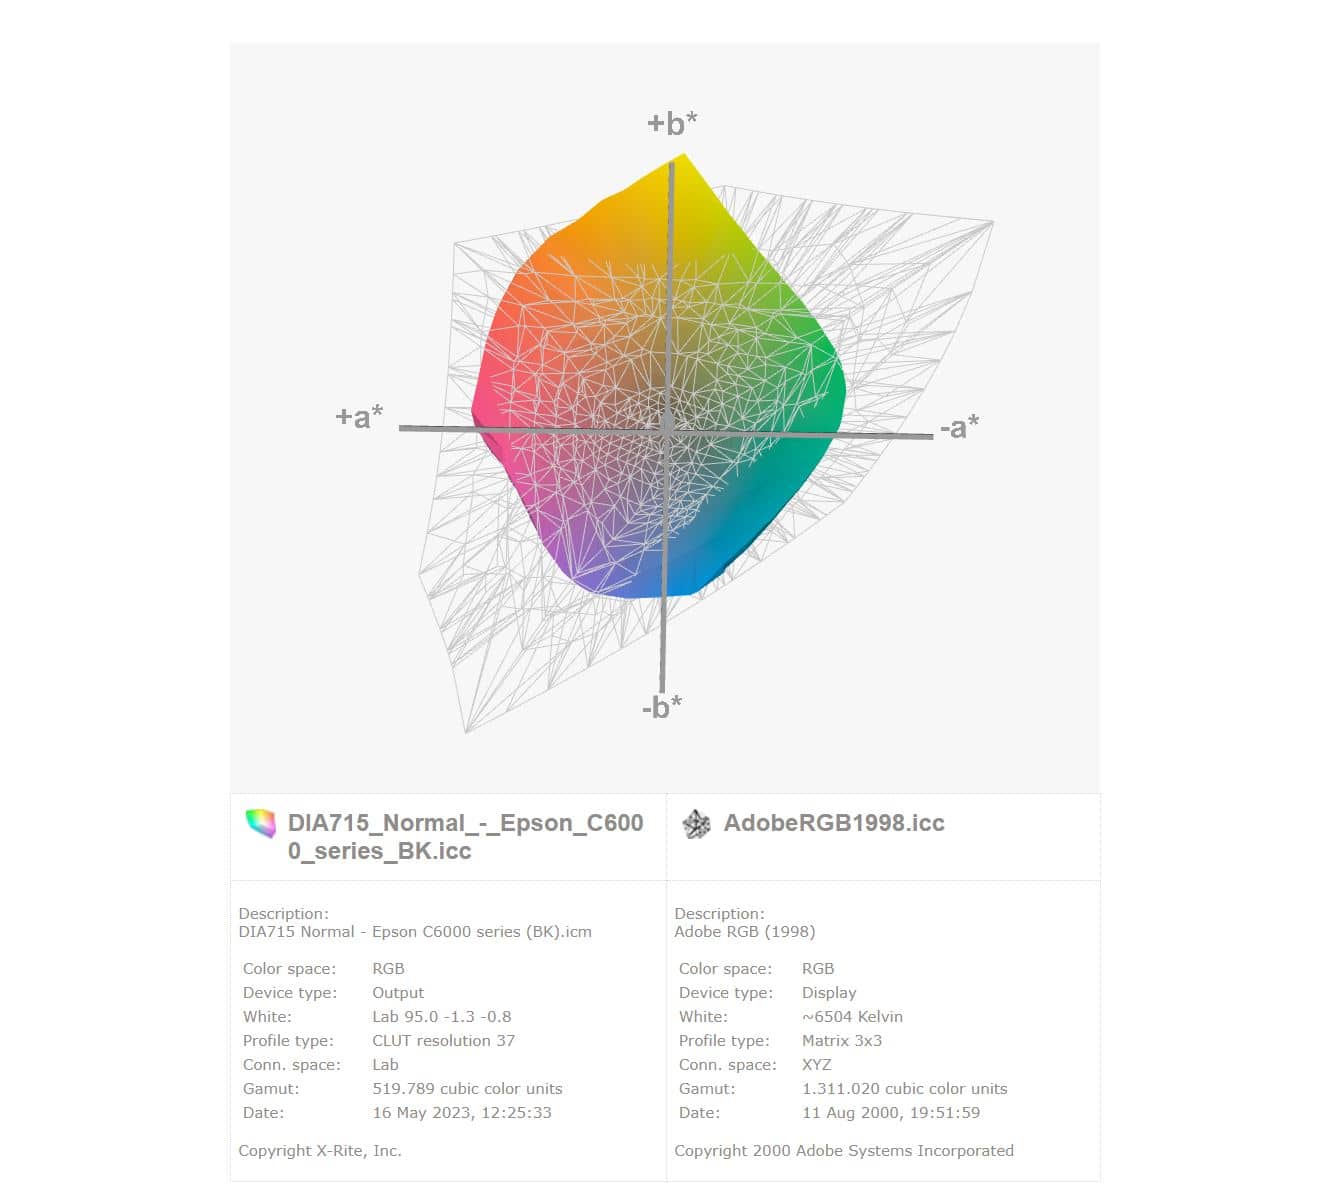 Visualisatie van kleurbereik DIA715 versus AdobeRGB1998